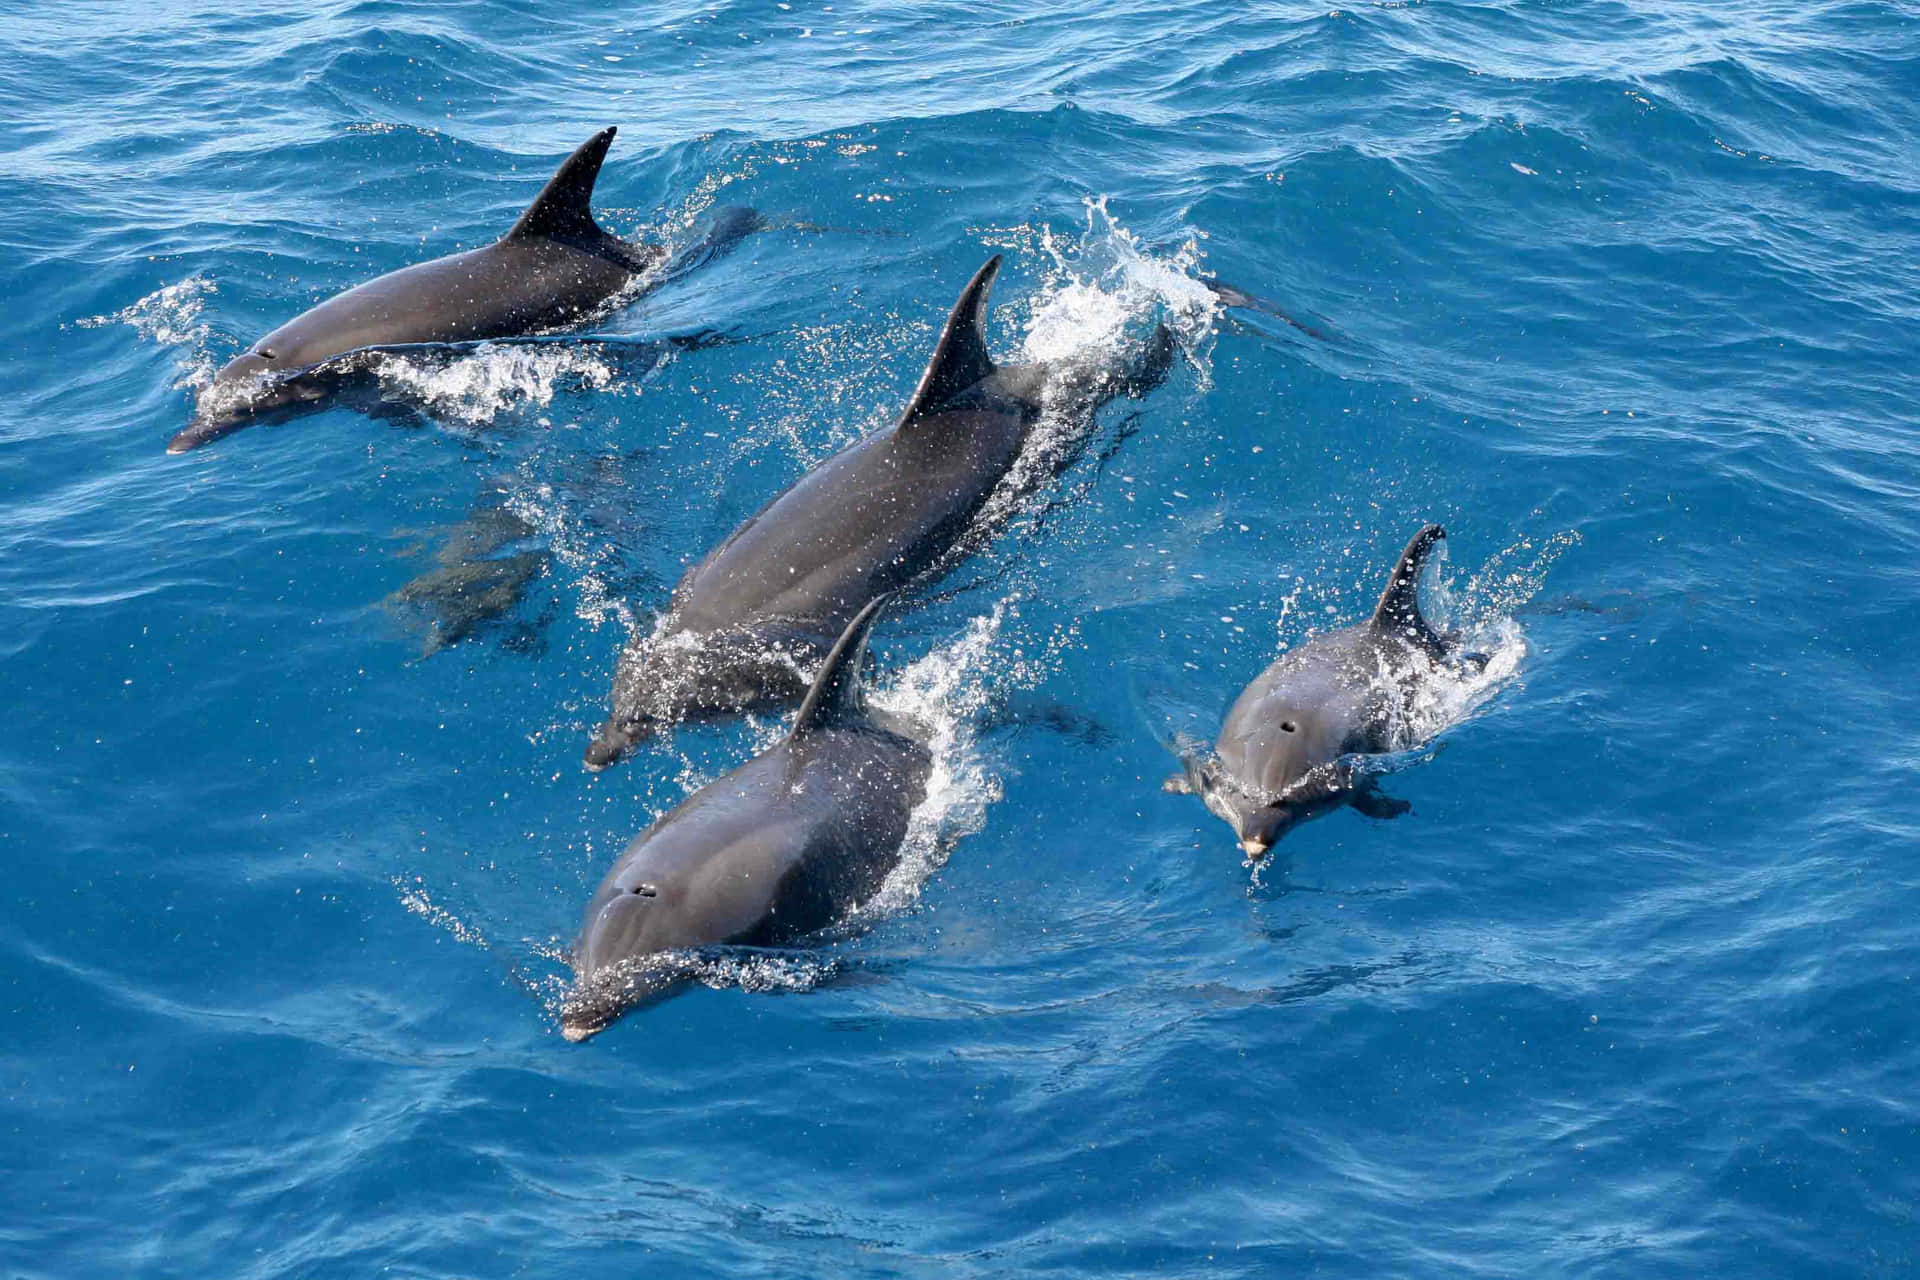 Unafamilia De Delfines Jugando En El Agua